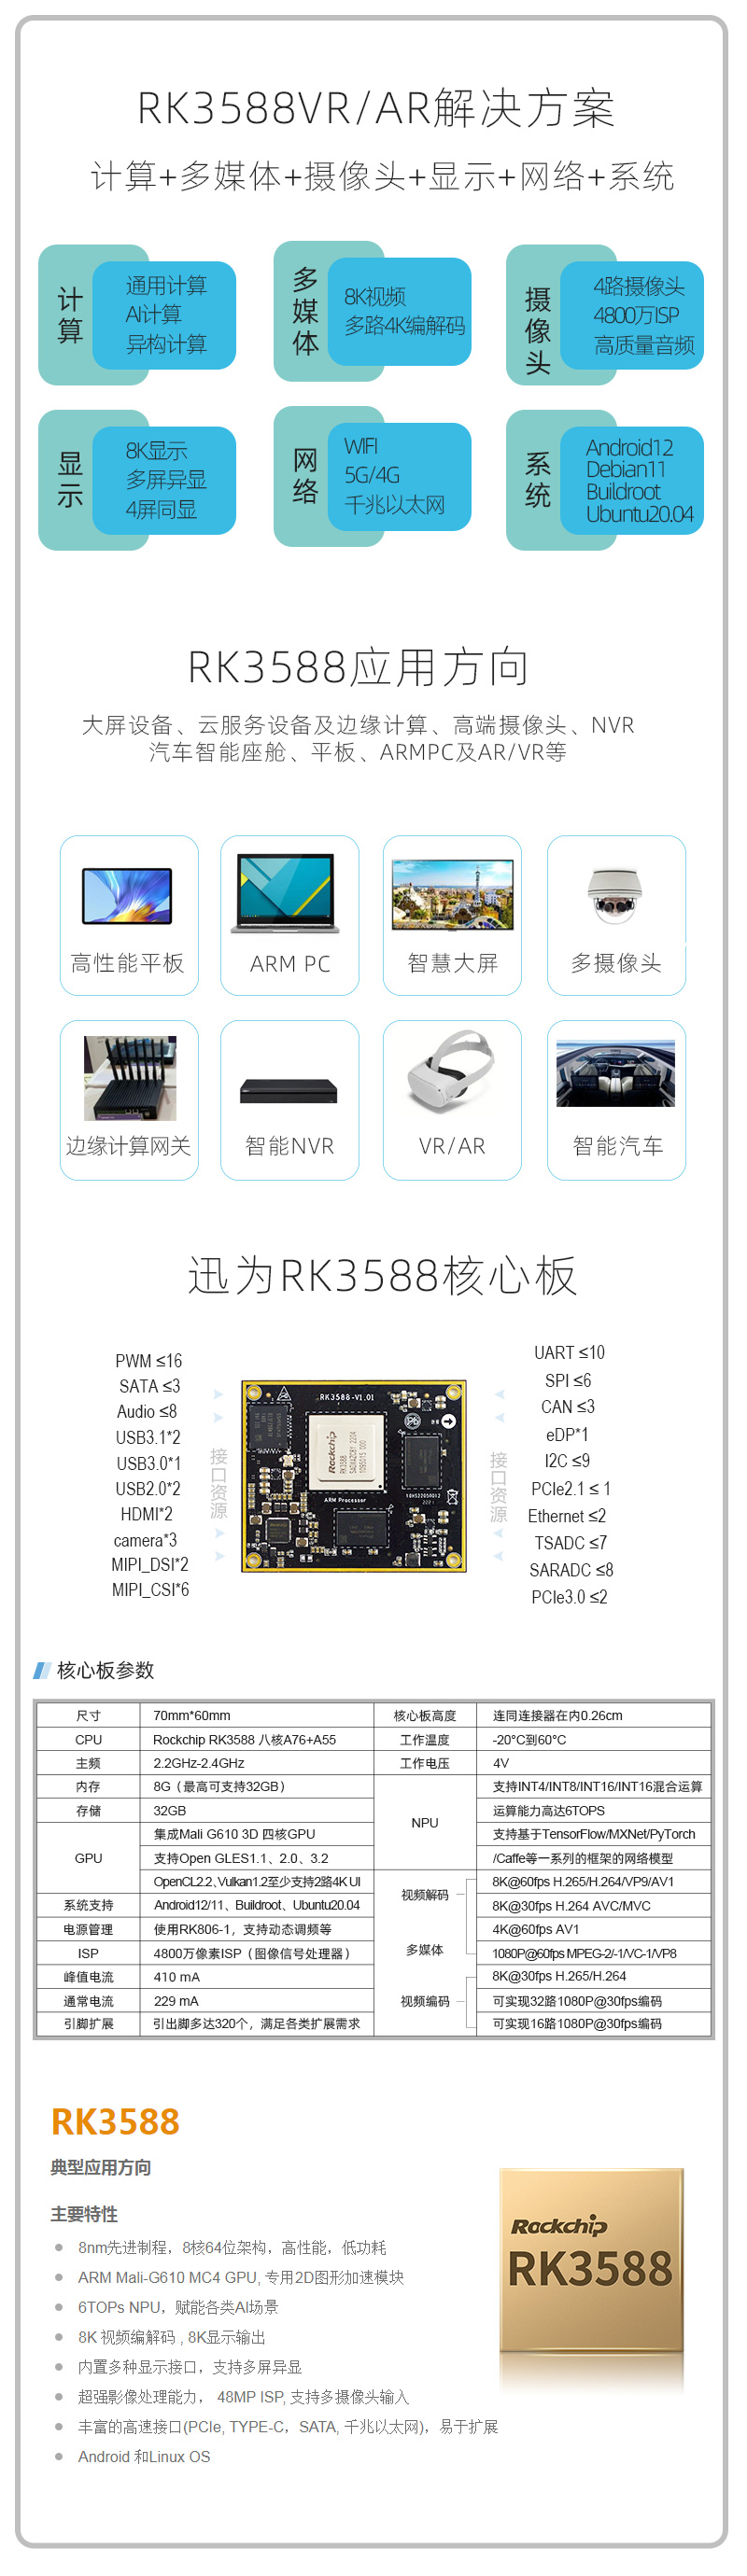 迅为RK3588开发板面向ARM PC、NVR、服务器、IPC、大屏显示设备等AIoT行业类应用产品_3588开发板